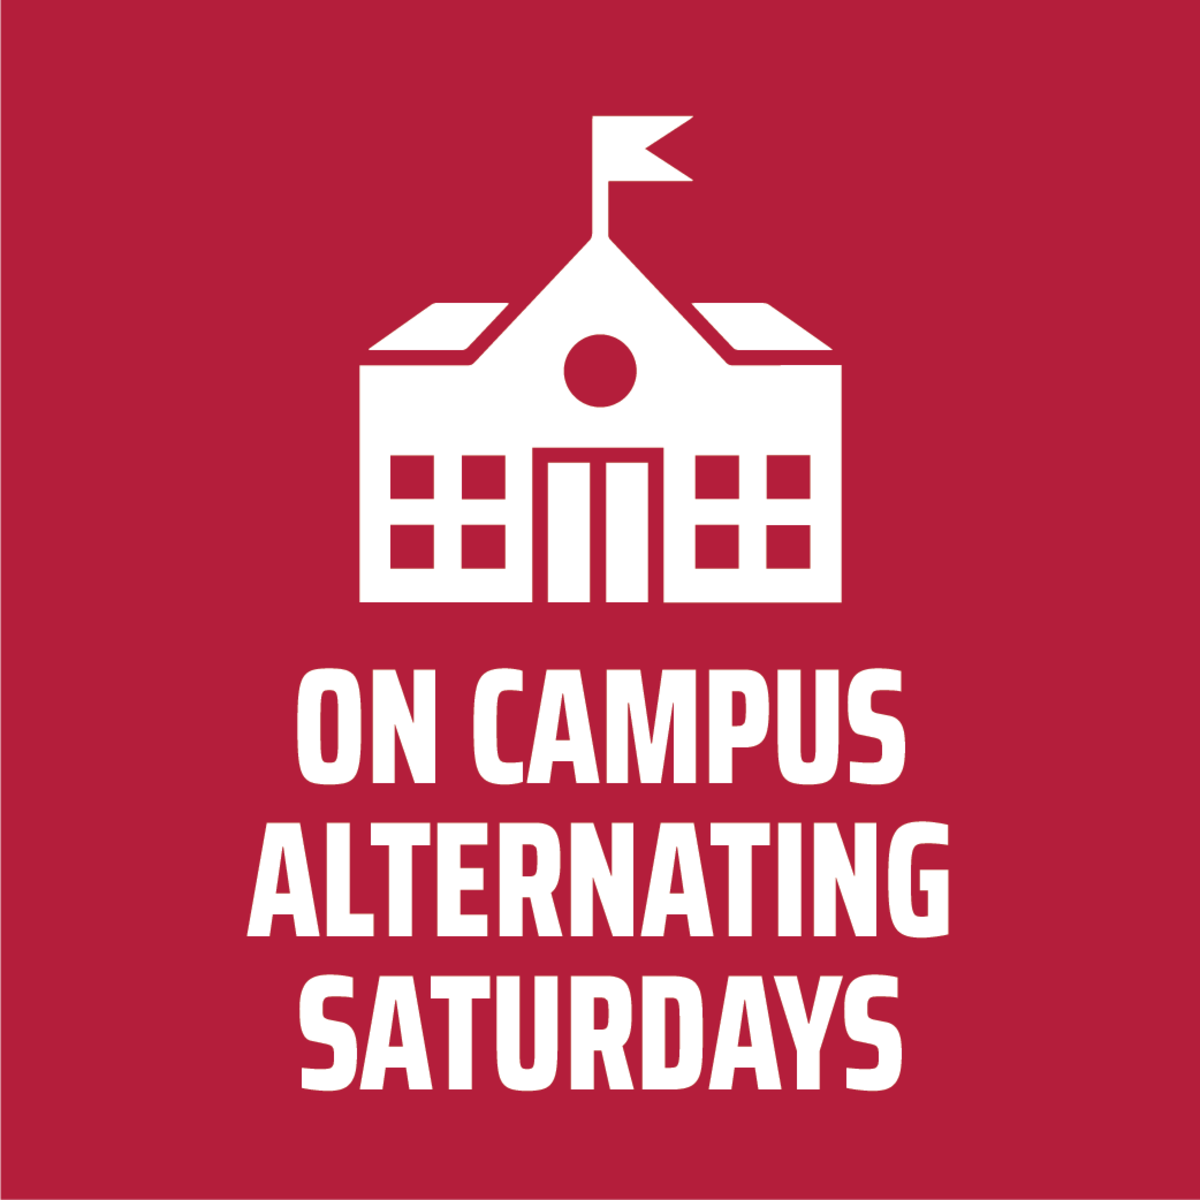 On campus, alternating Saturdays